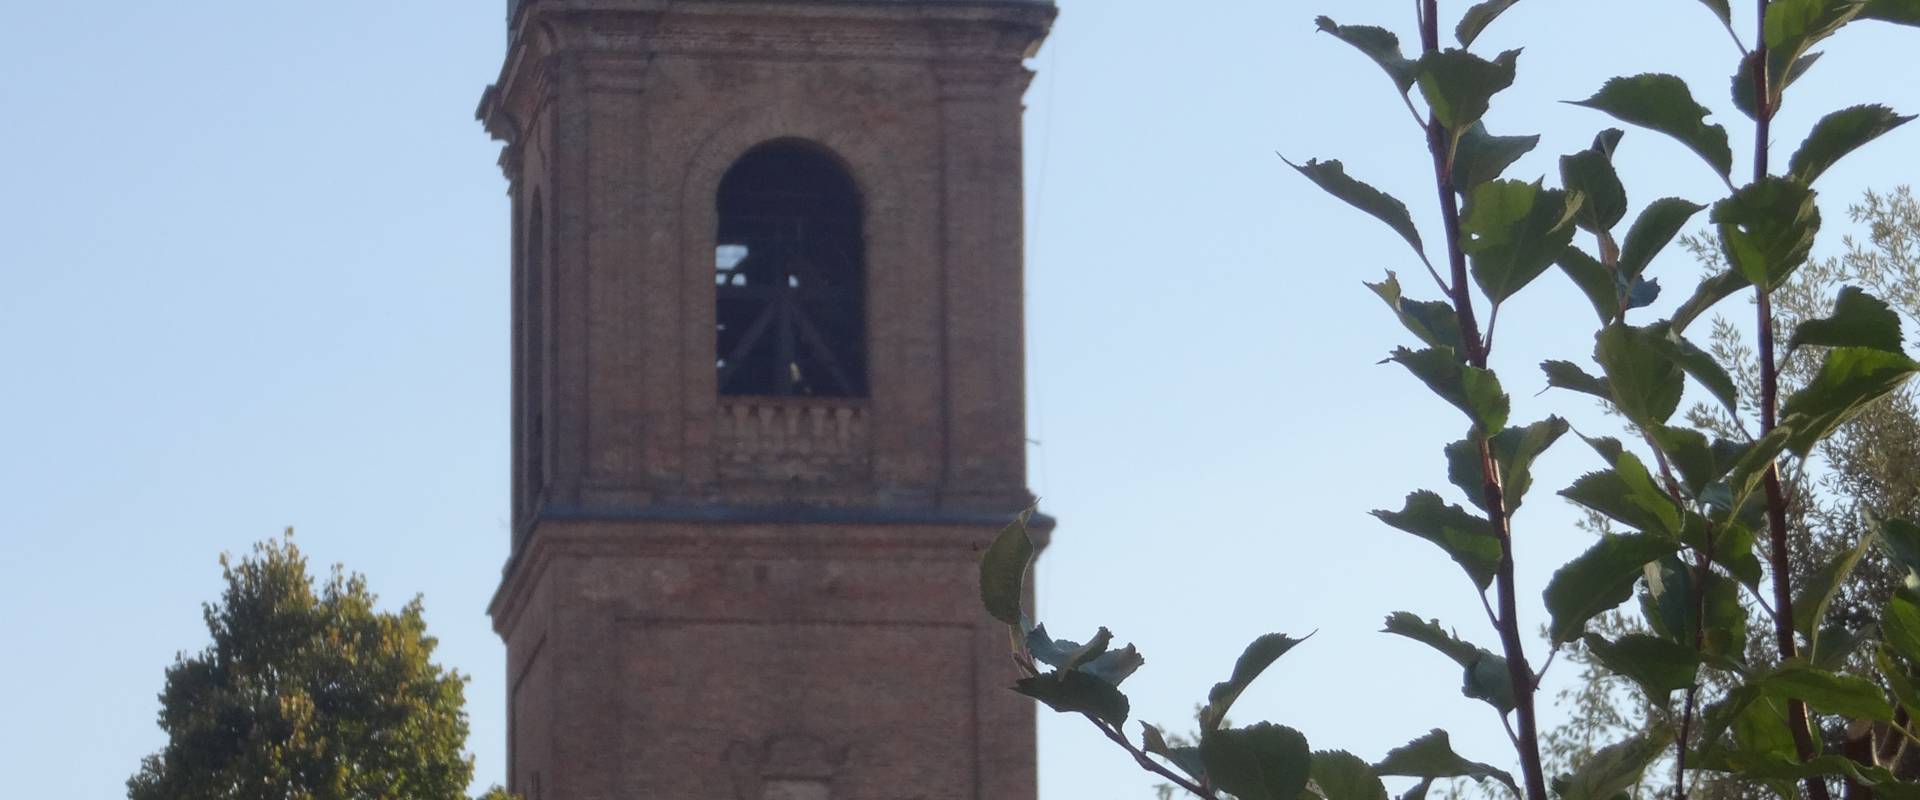 Torre civica di Guastalla foto di Pincez79